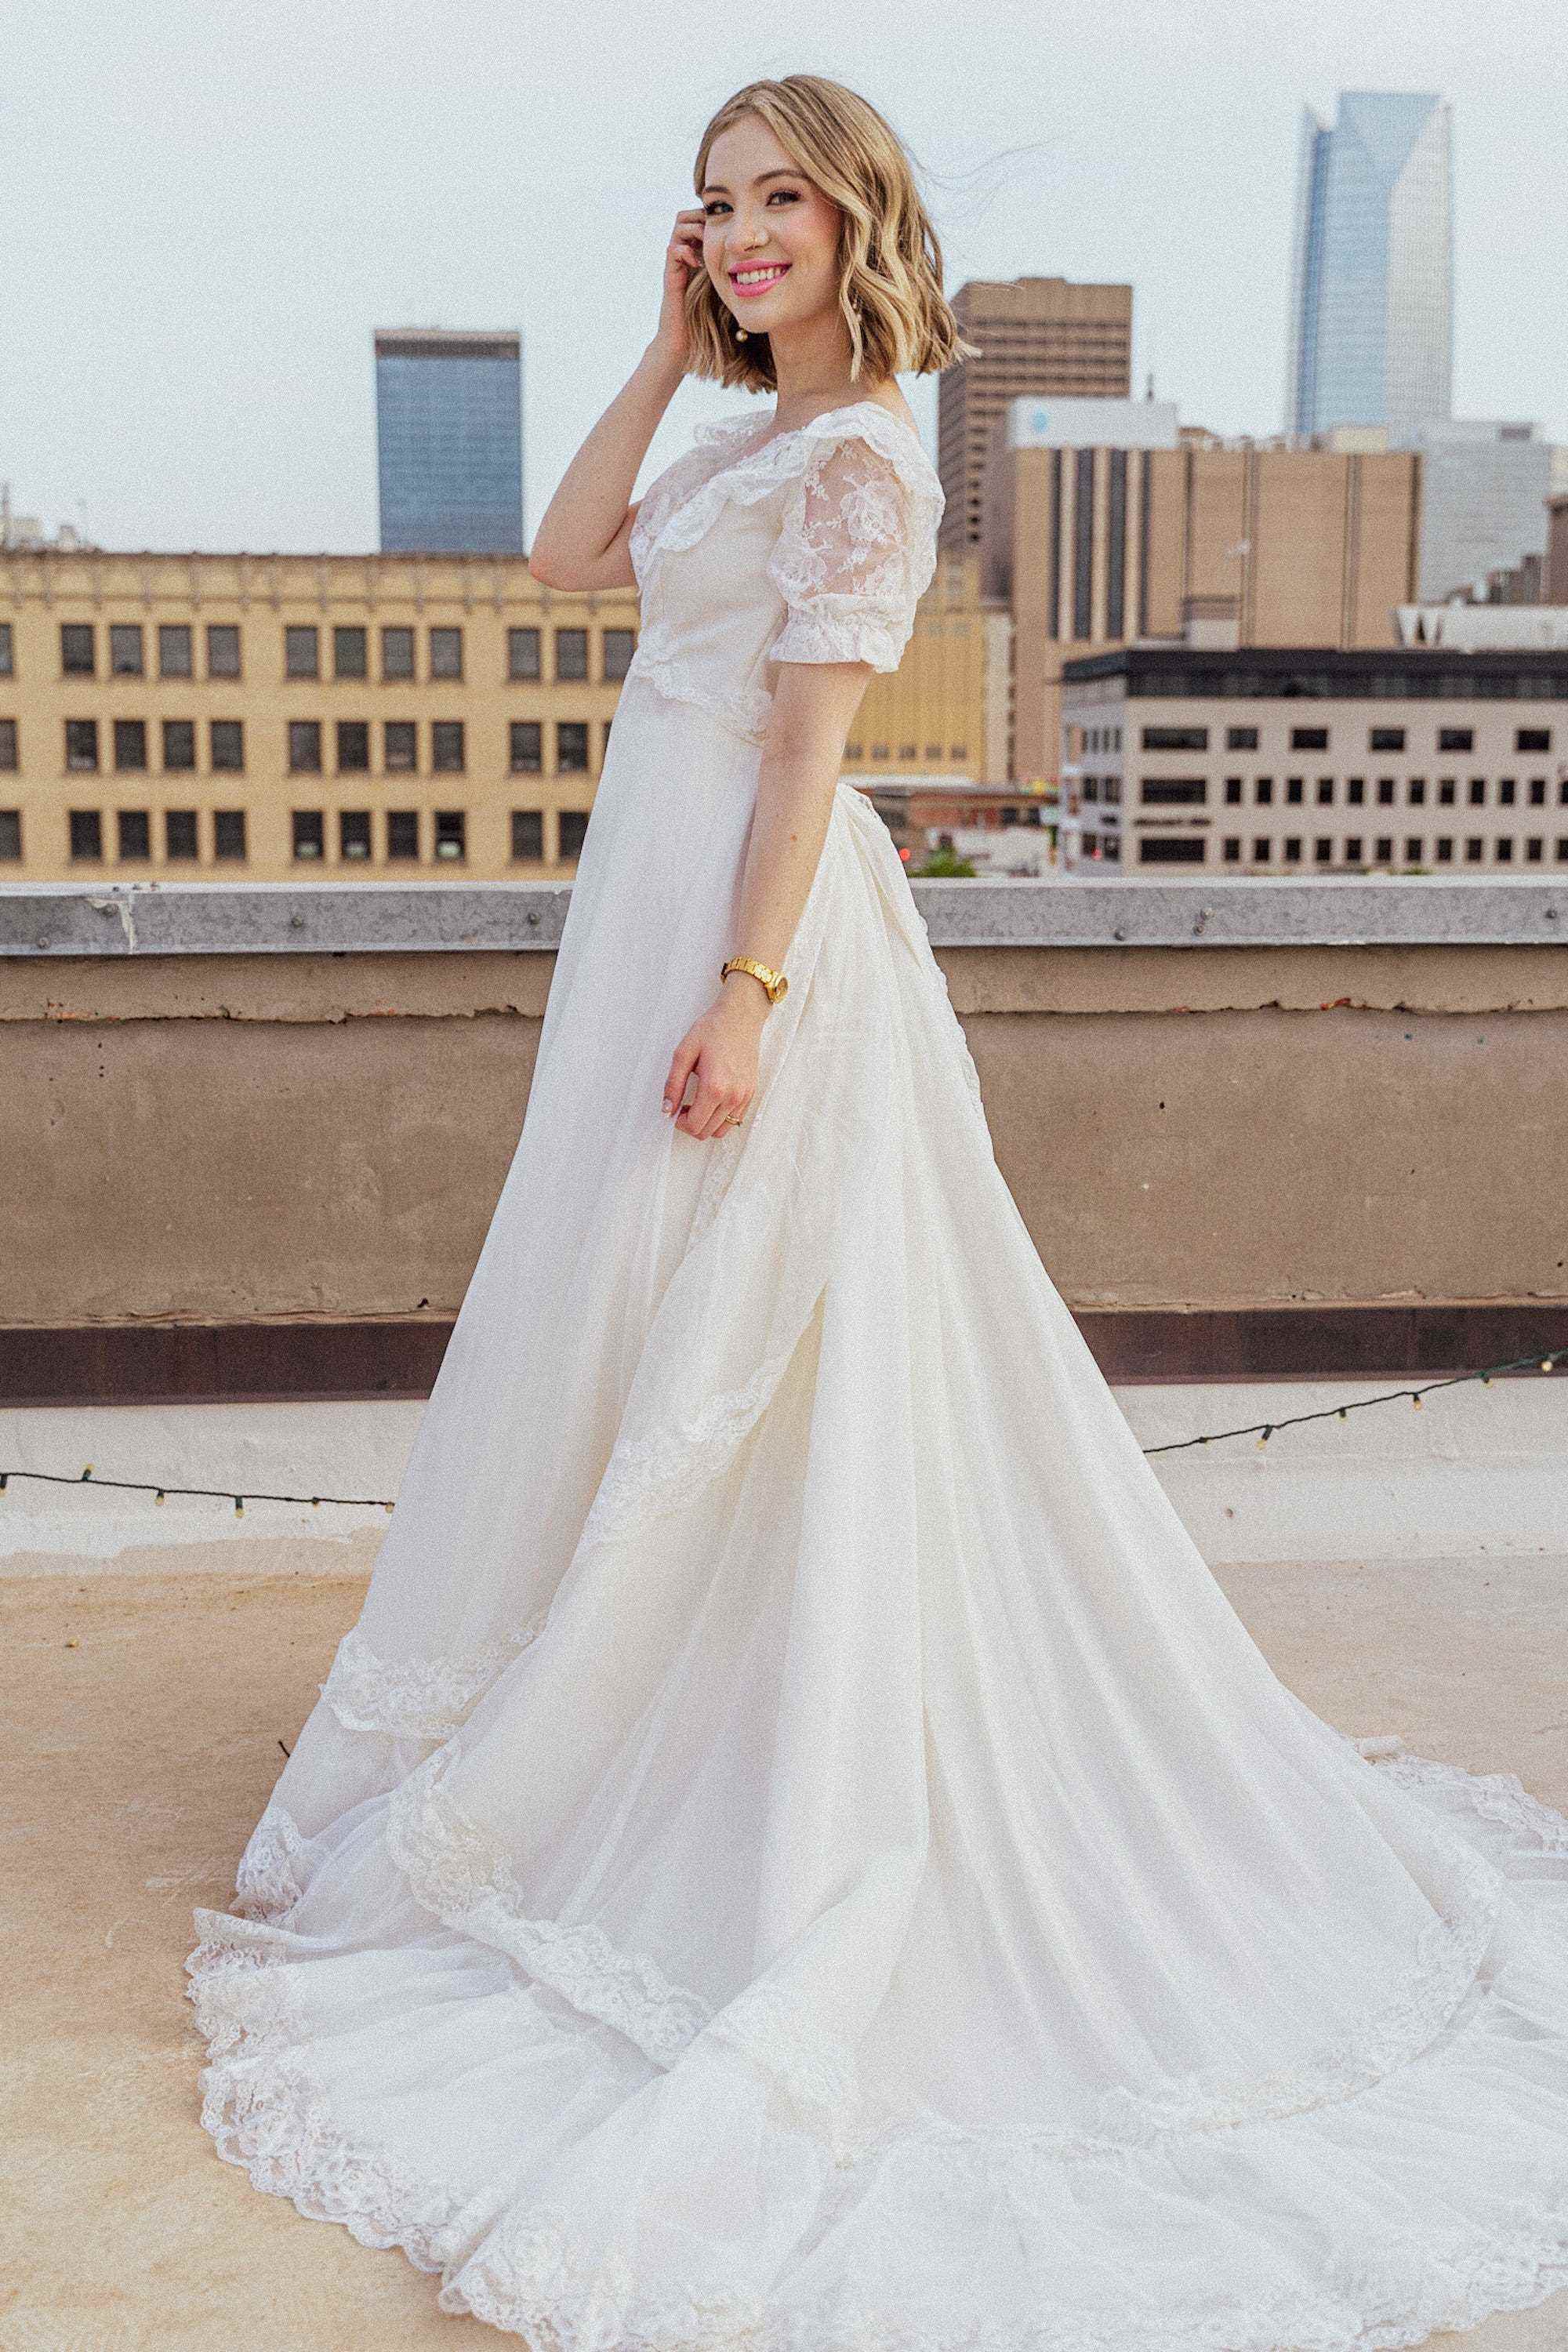 Eine Braut lächelt in ihrem Hochzeitskleid auf einem Dach.